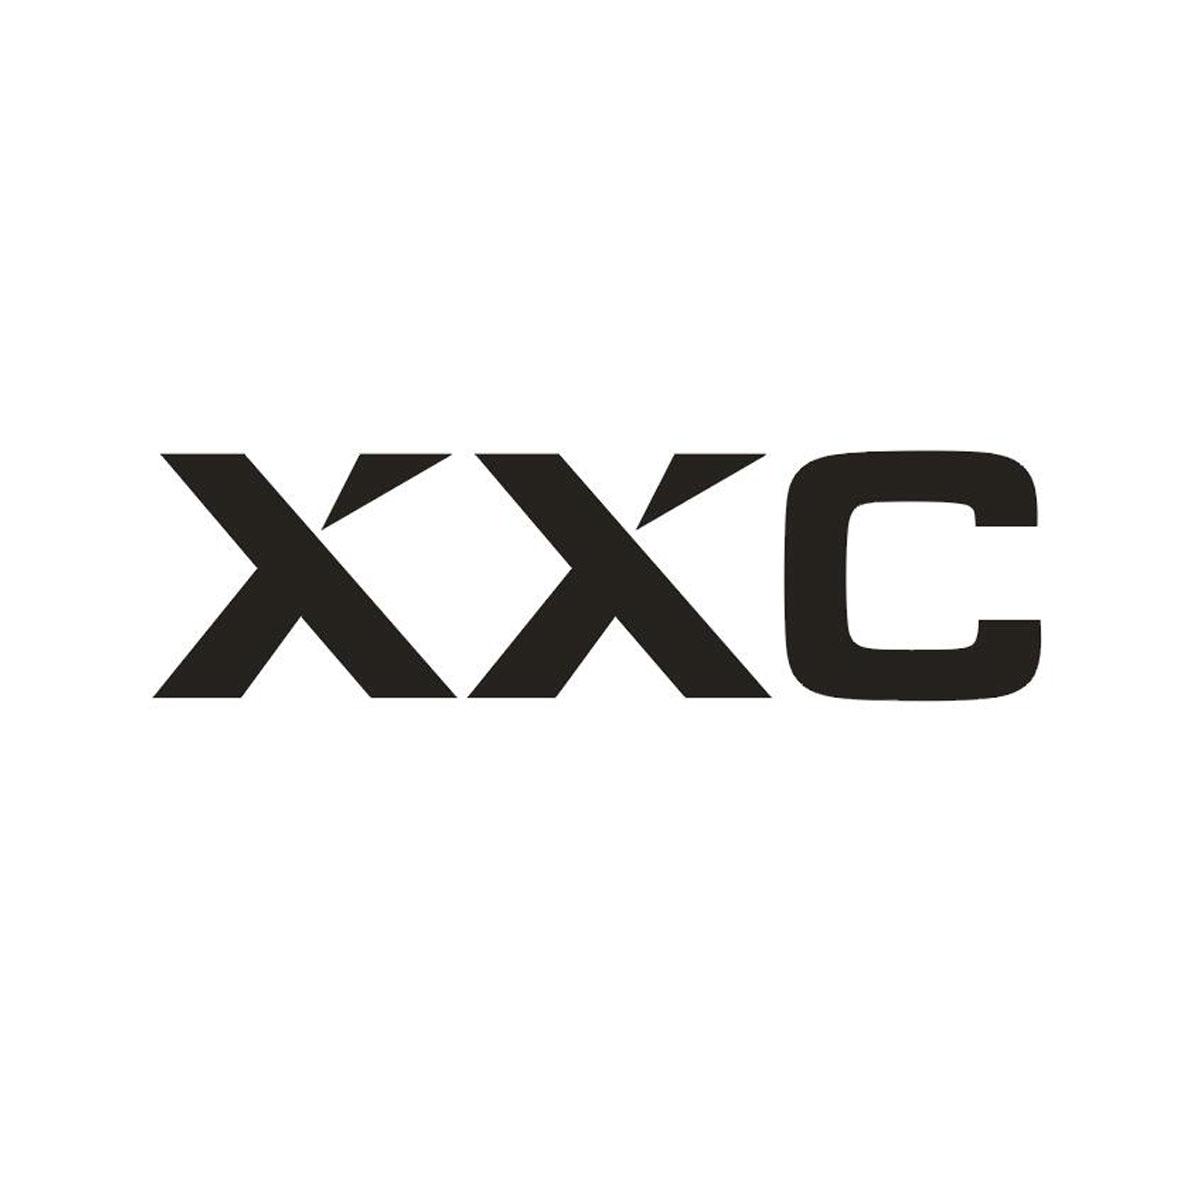 XXC